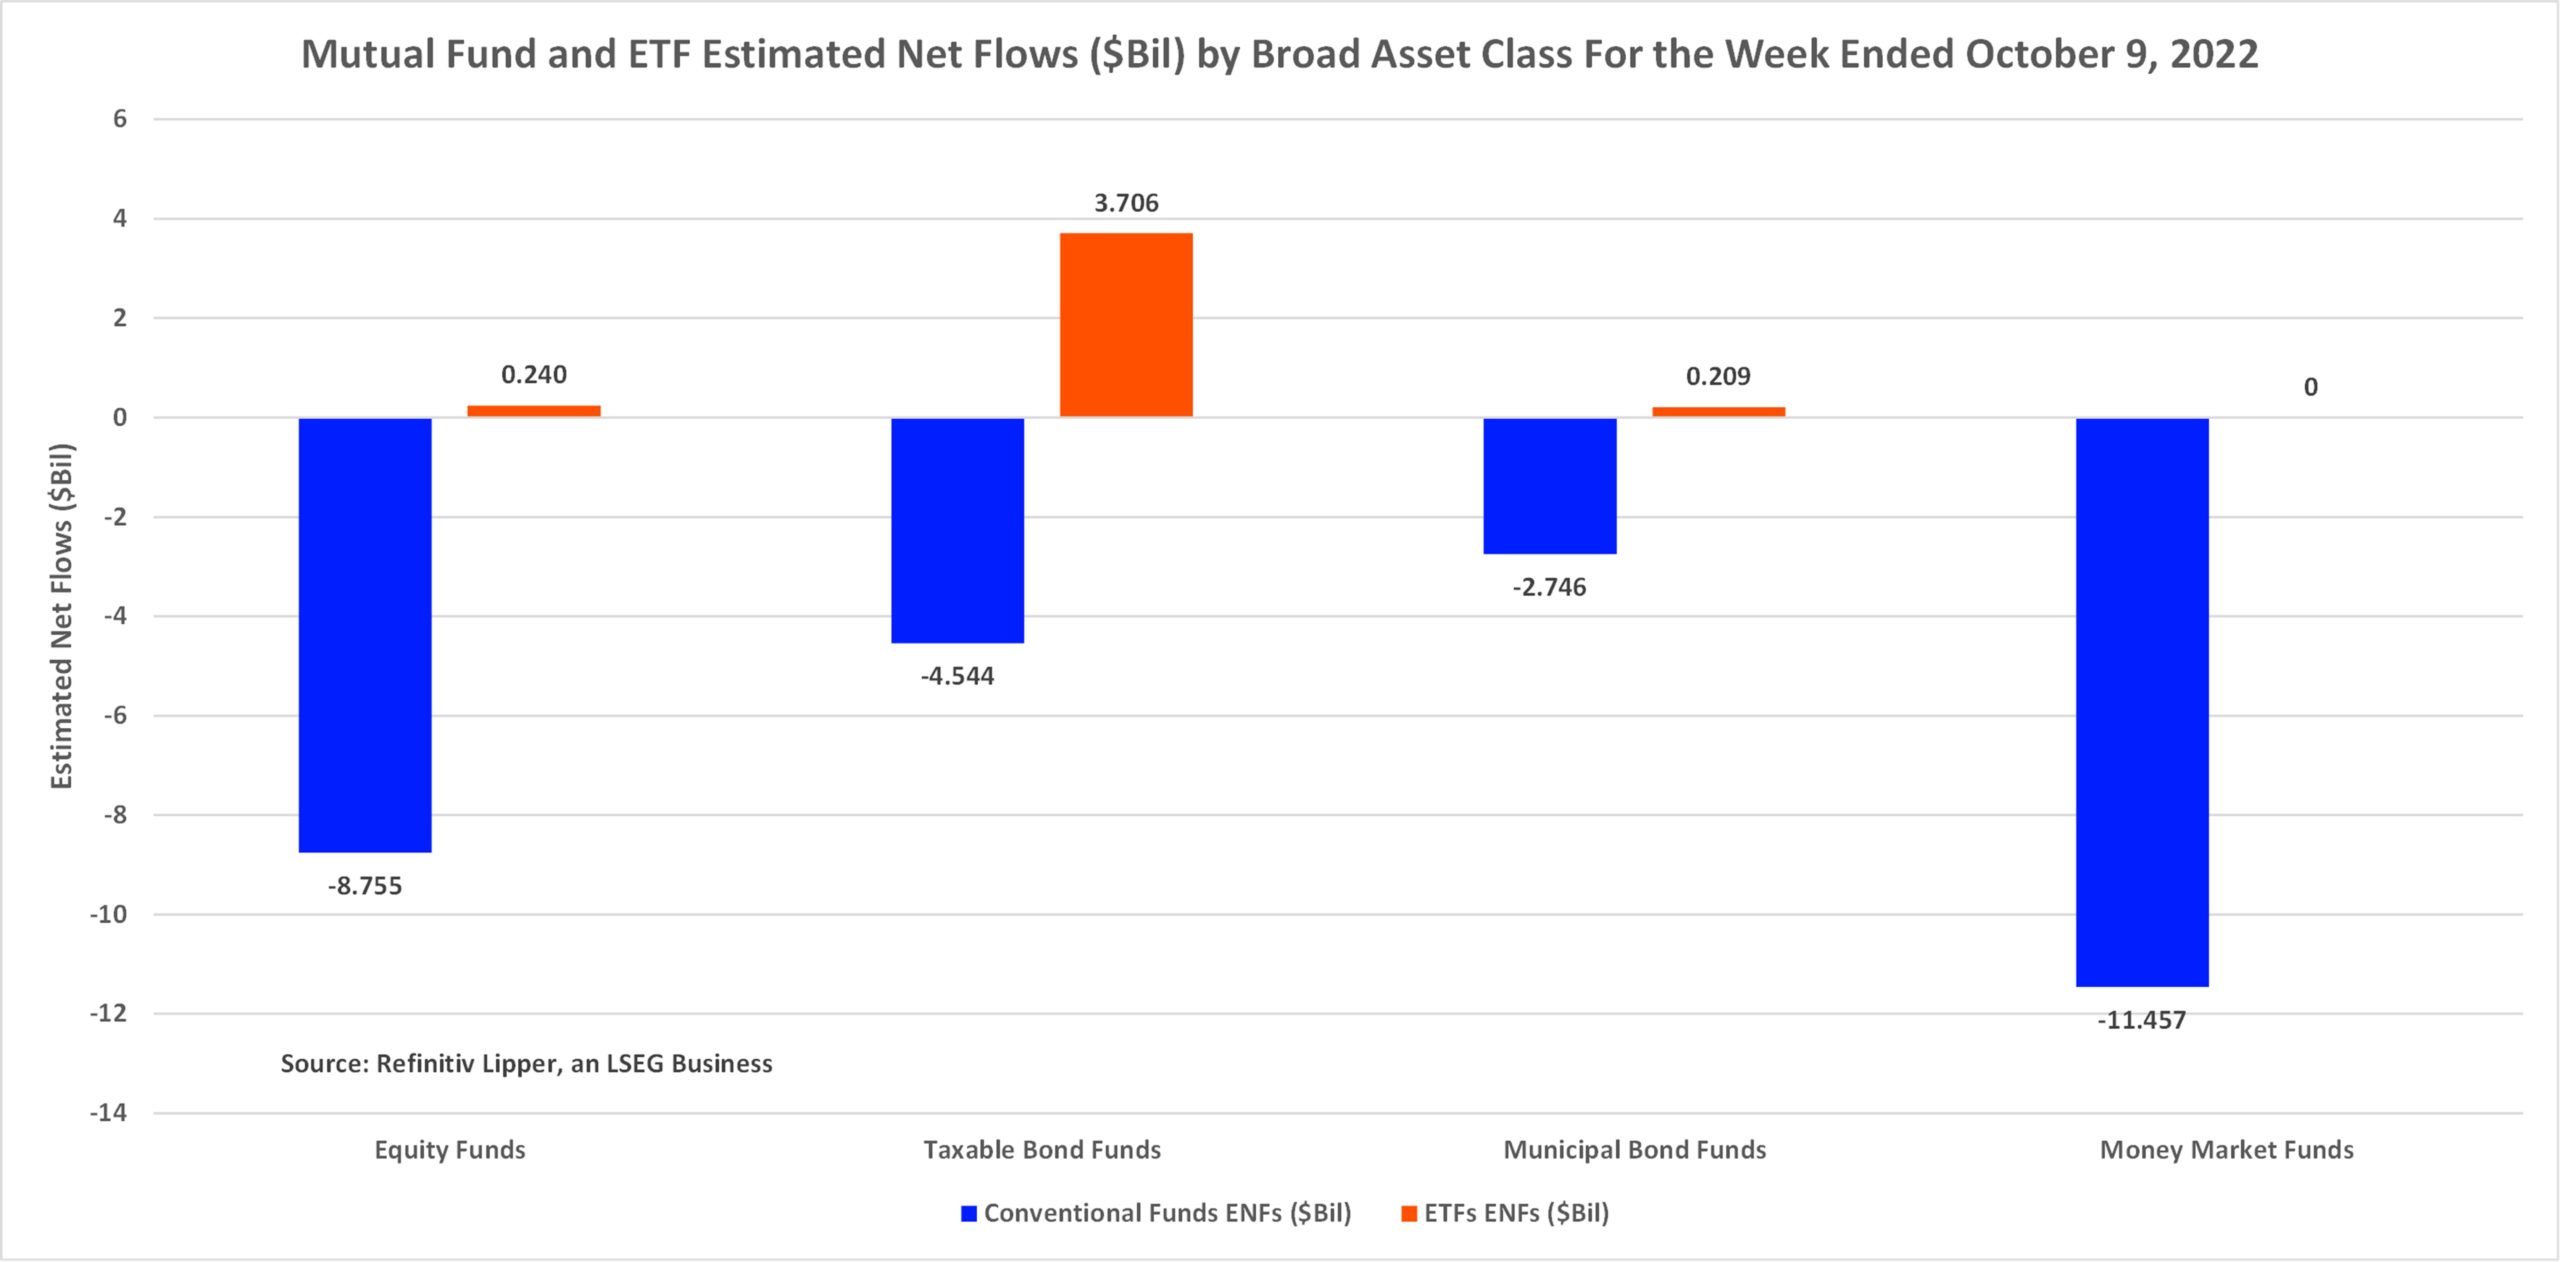 MF-ETF-ENFs by Broad Assset Class